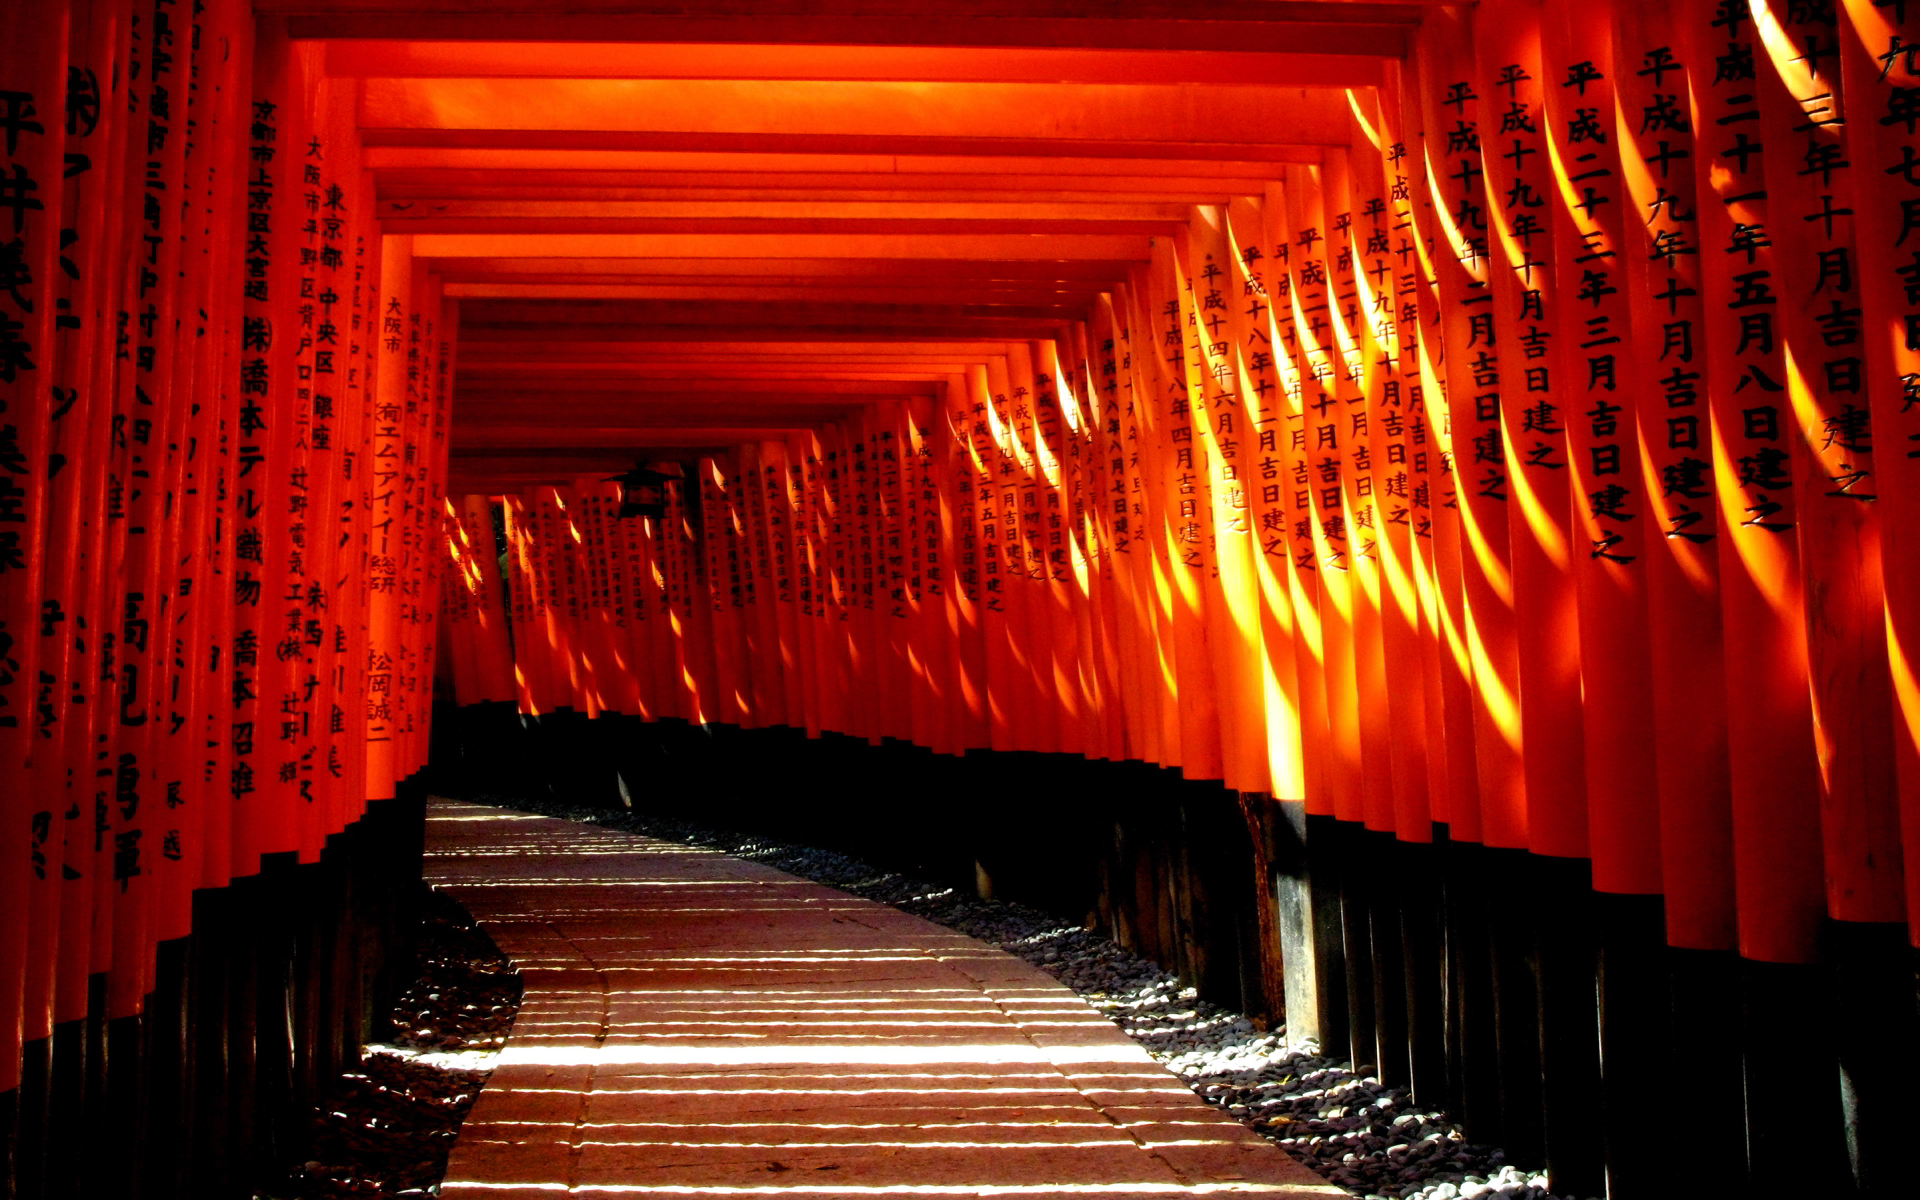 Torii shinto shrine